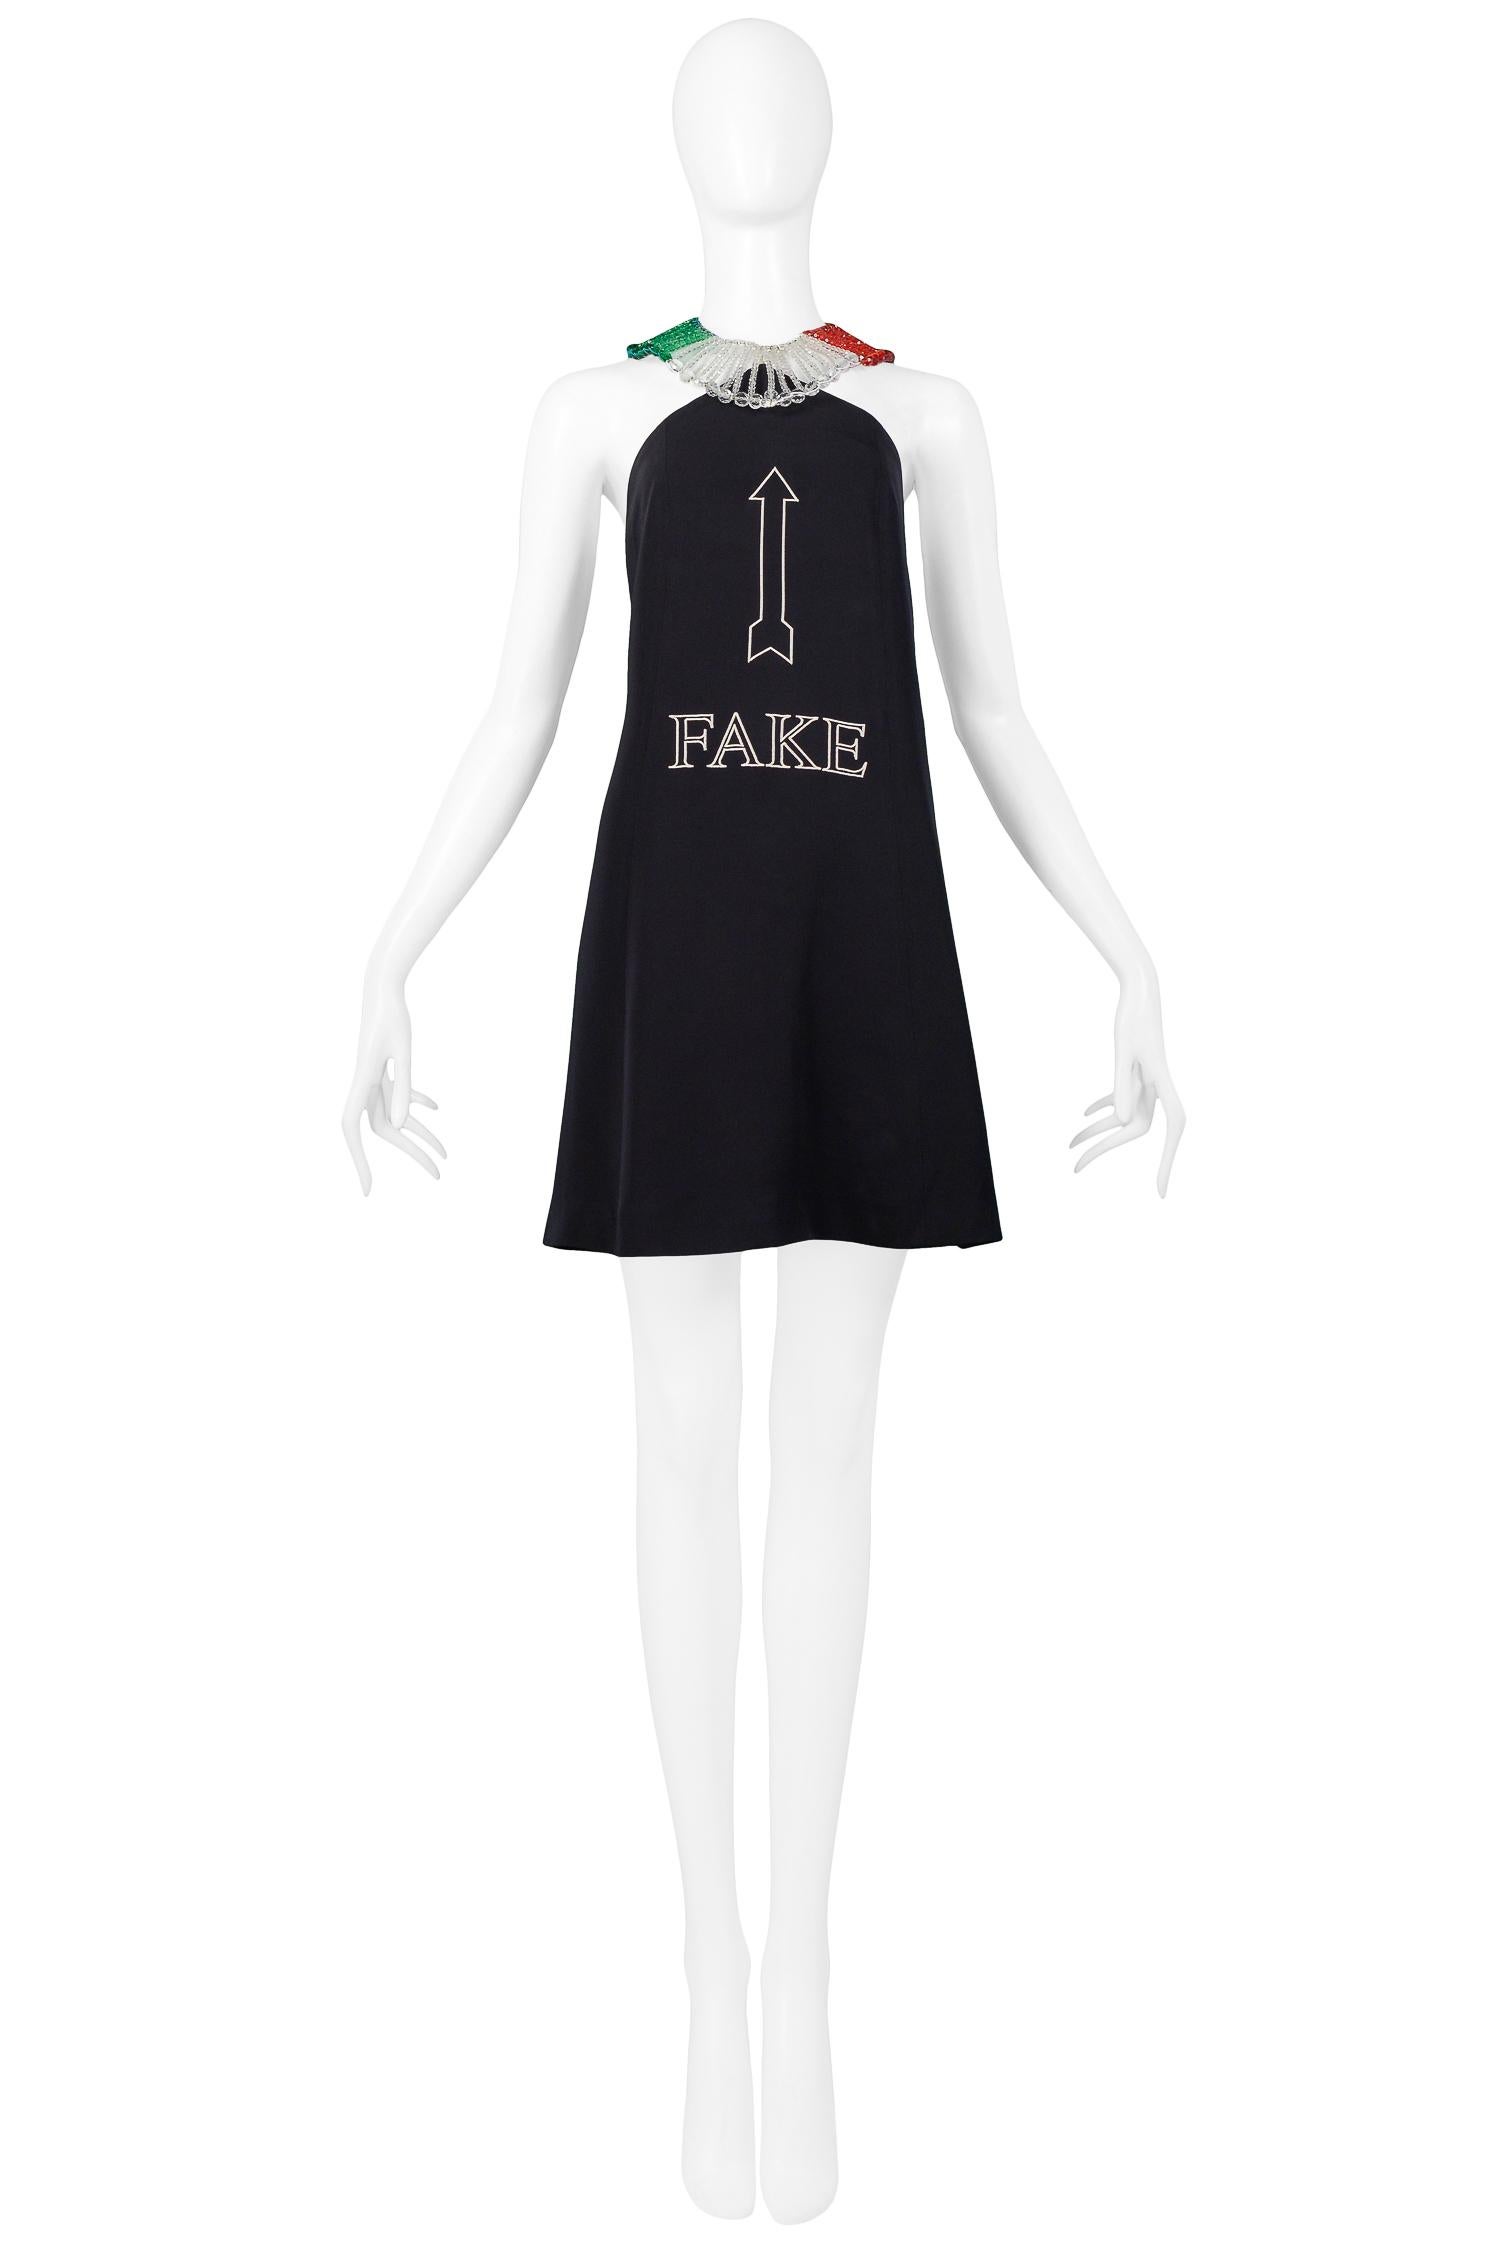 Resurrection Vintage est heureux de vous proposer une mini robe vintage Moschino by Franco Moschino à texte 